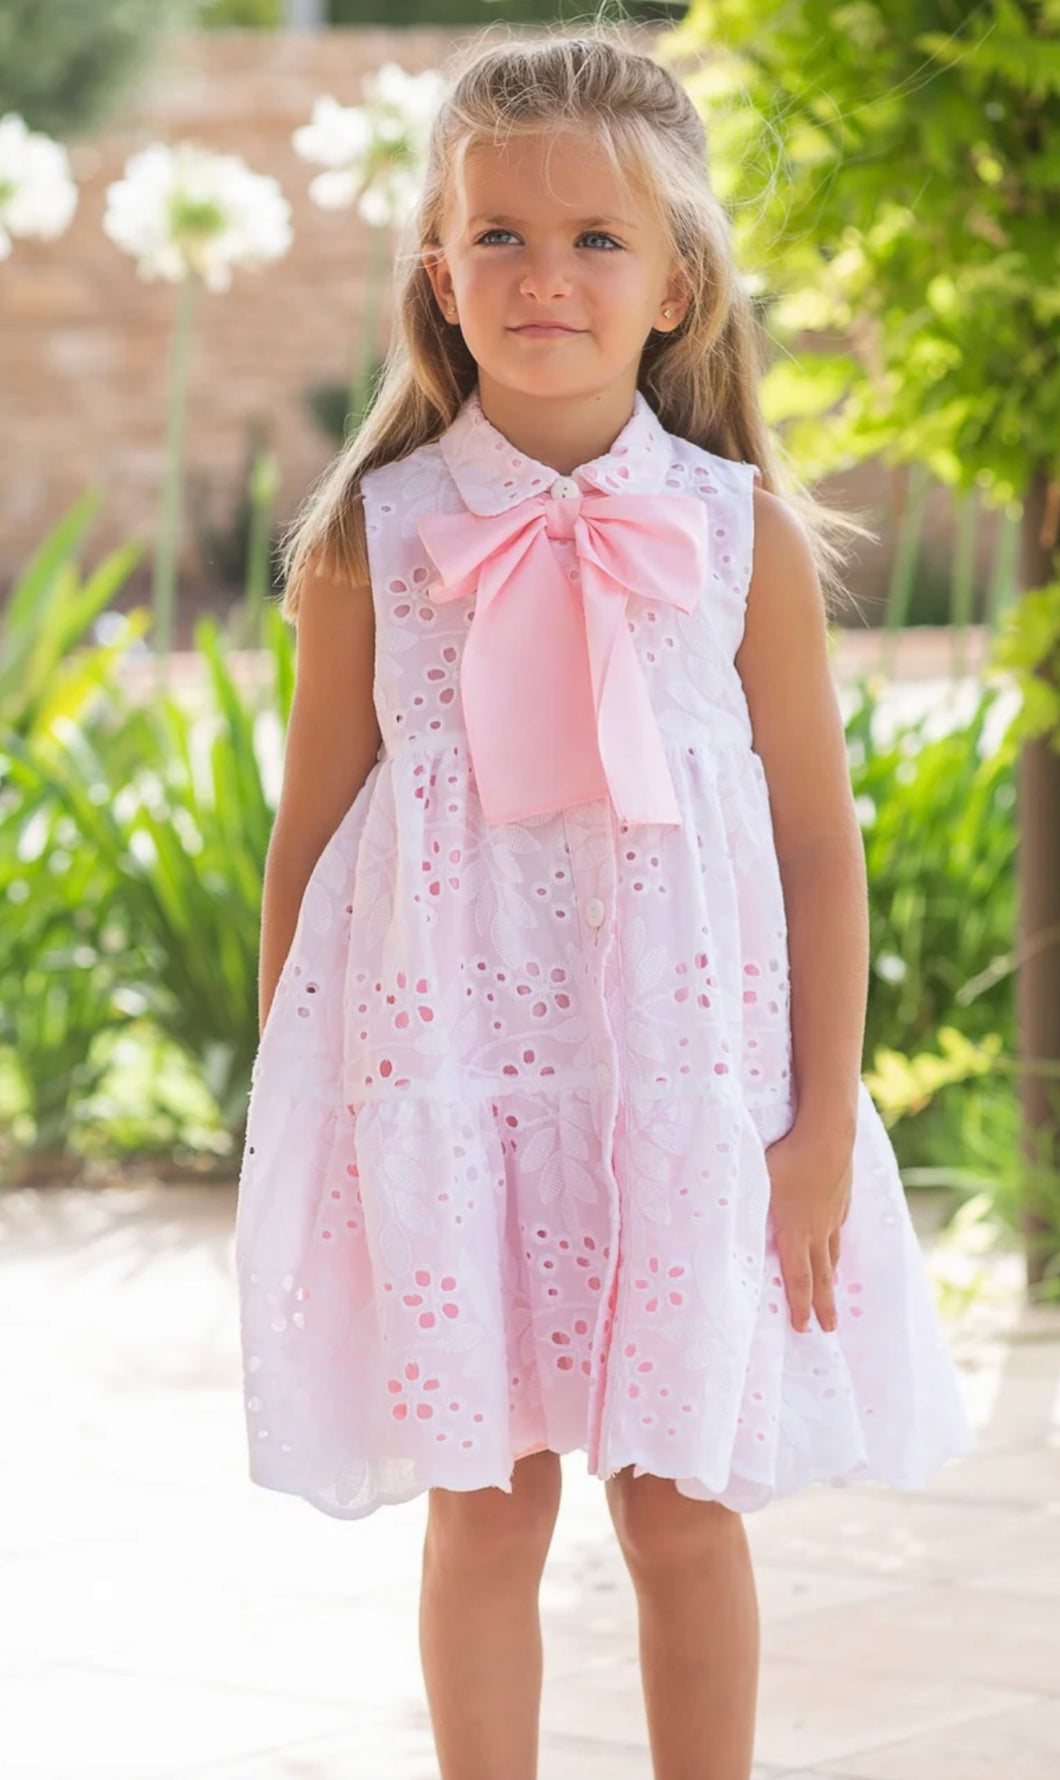 Rochy white/pink dress 3460